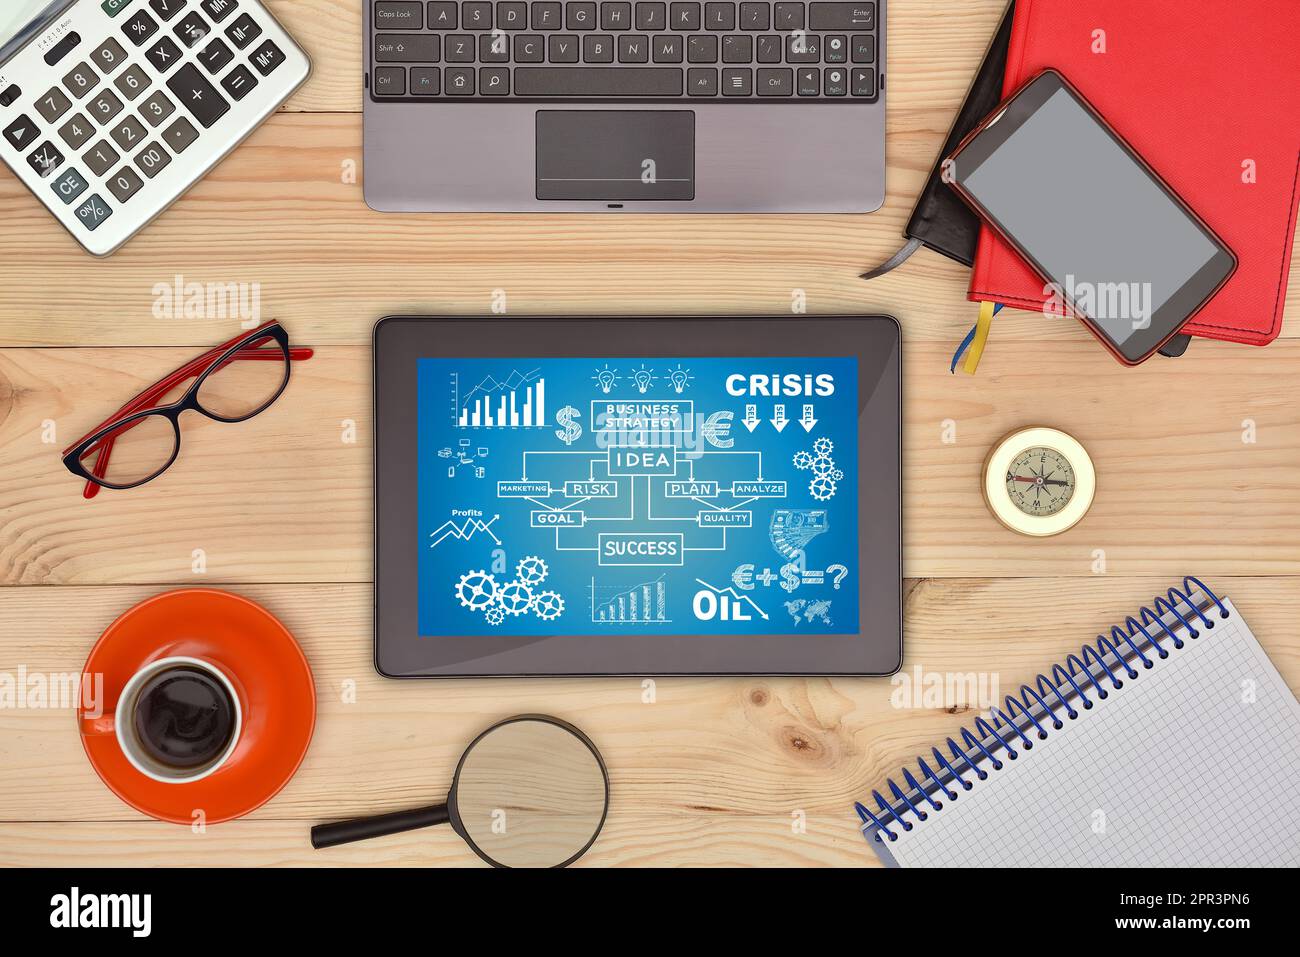 Tablette numérique avec écran de démarrage sur le concept et de nombreux objets d'affaires sur un bureau en bois. Banque D'Images